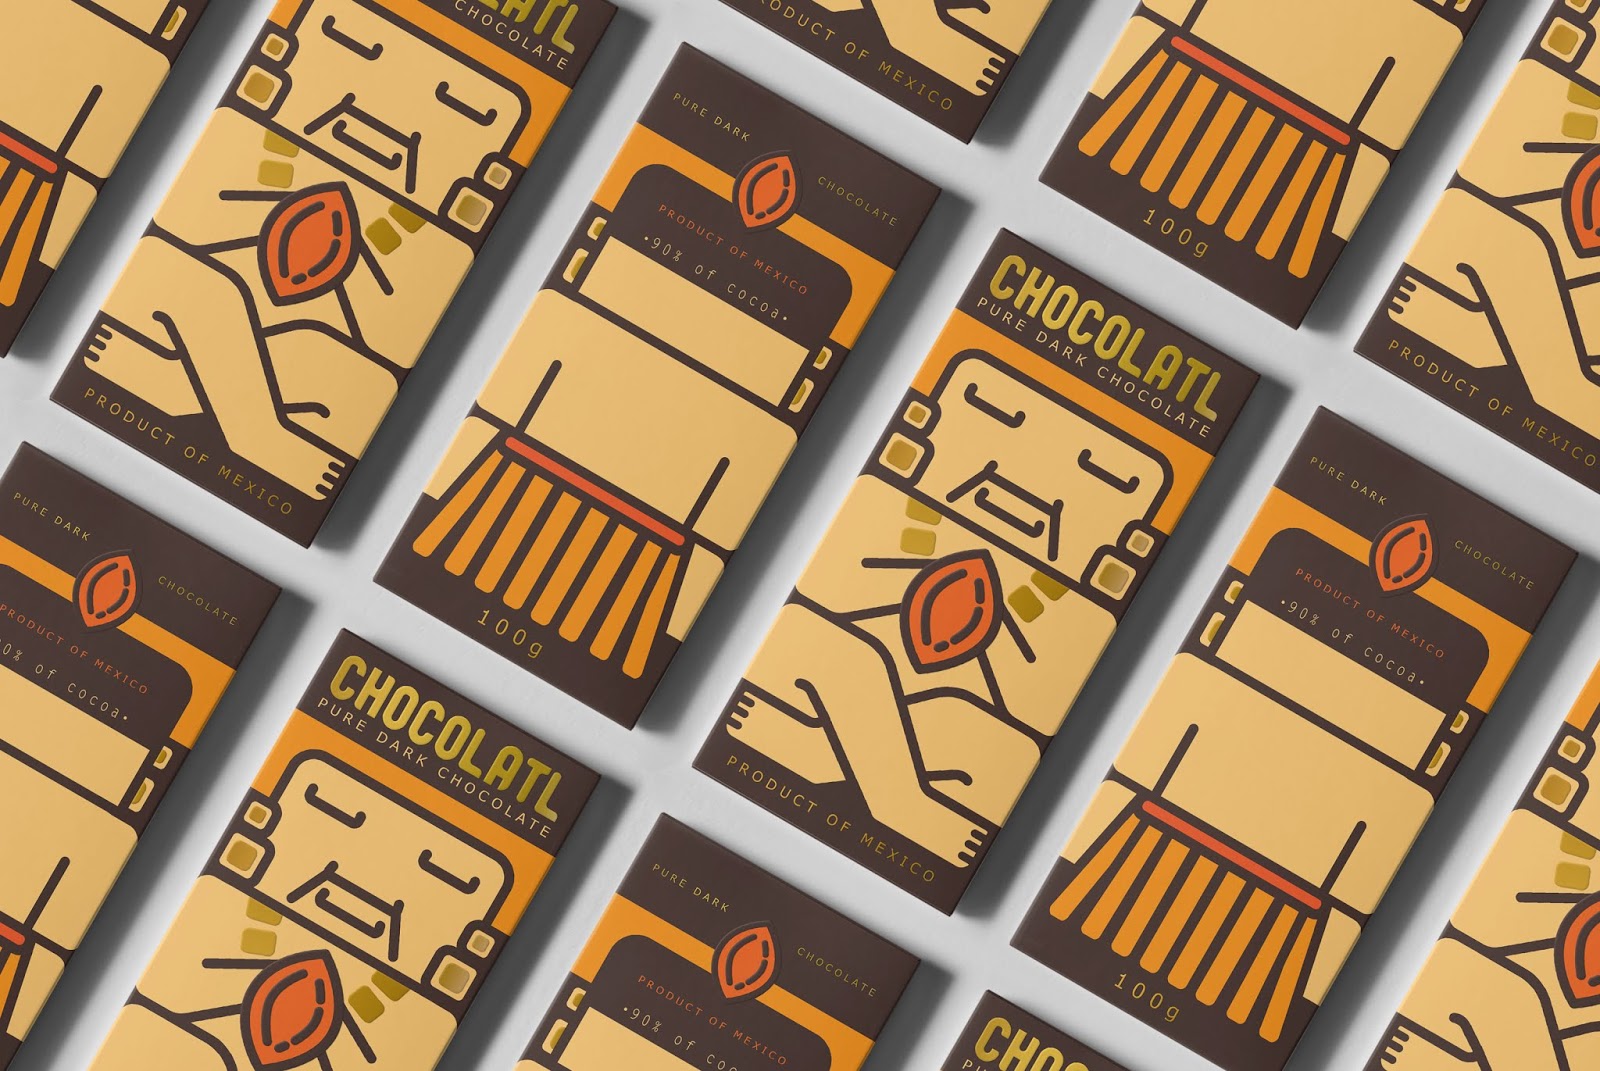 巧克力形象西安oe欧亿体育app官方下载
品牌包装设计